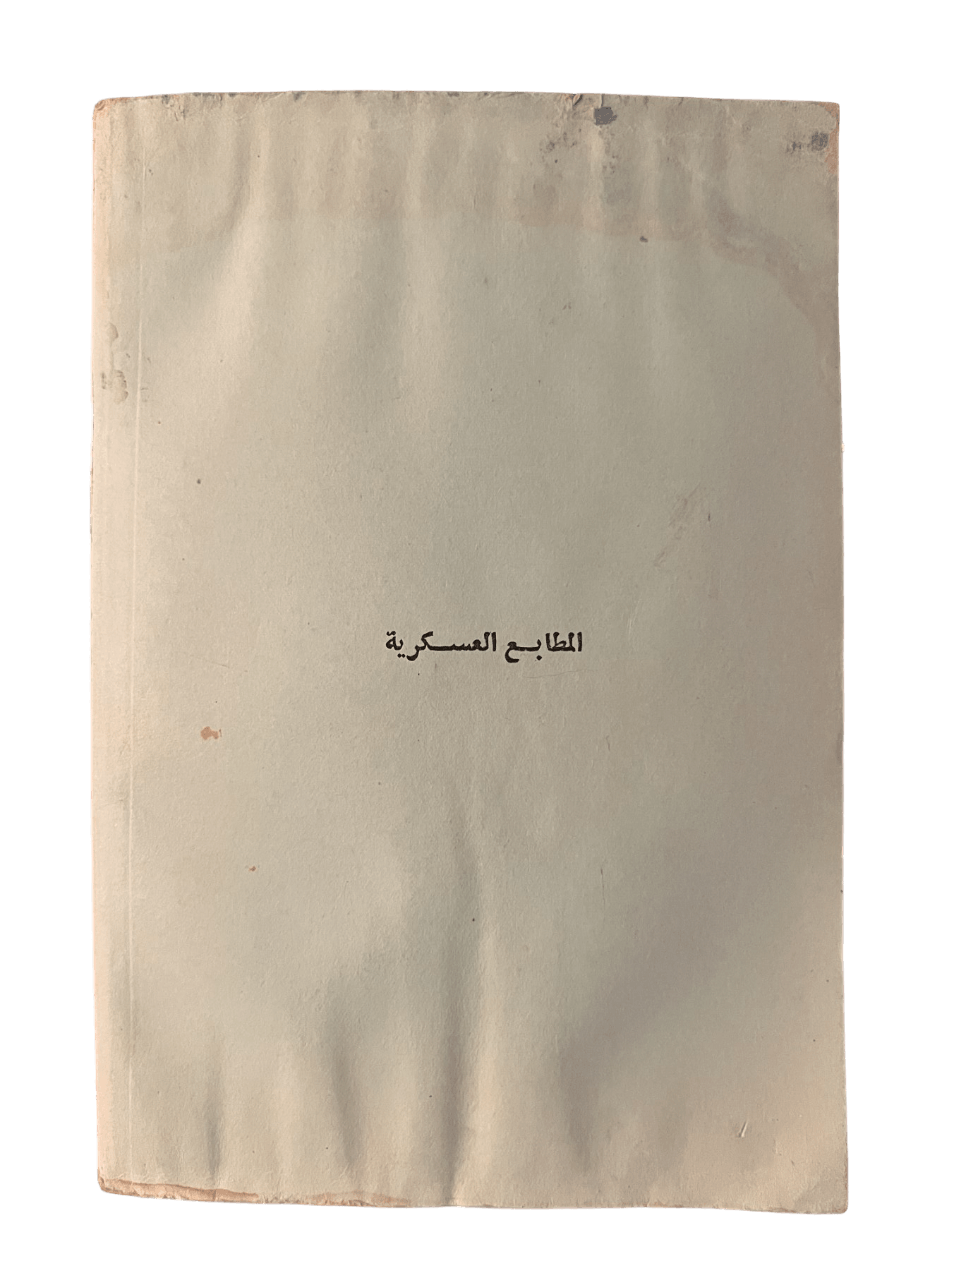 Iraqi Military Book: "Field Career: Vol. 1 No. 1 " - KHAJISTAN™